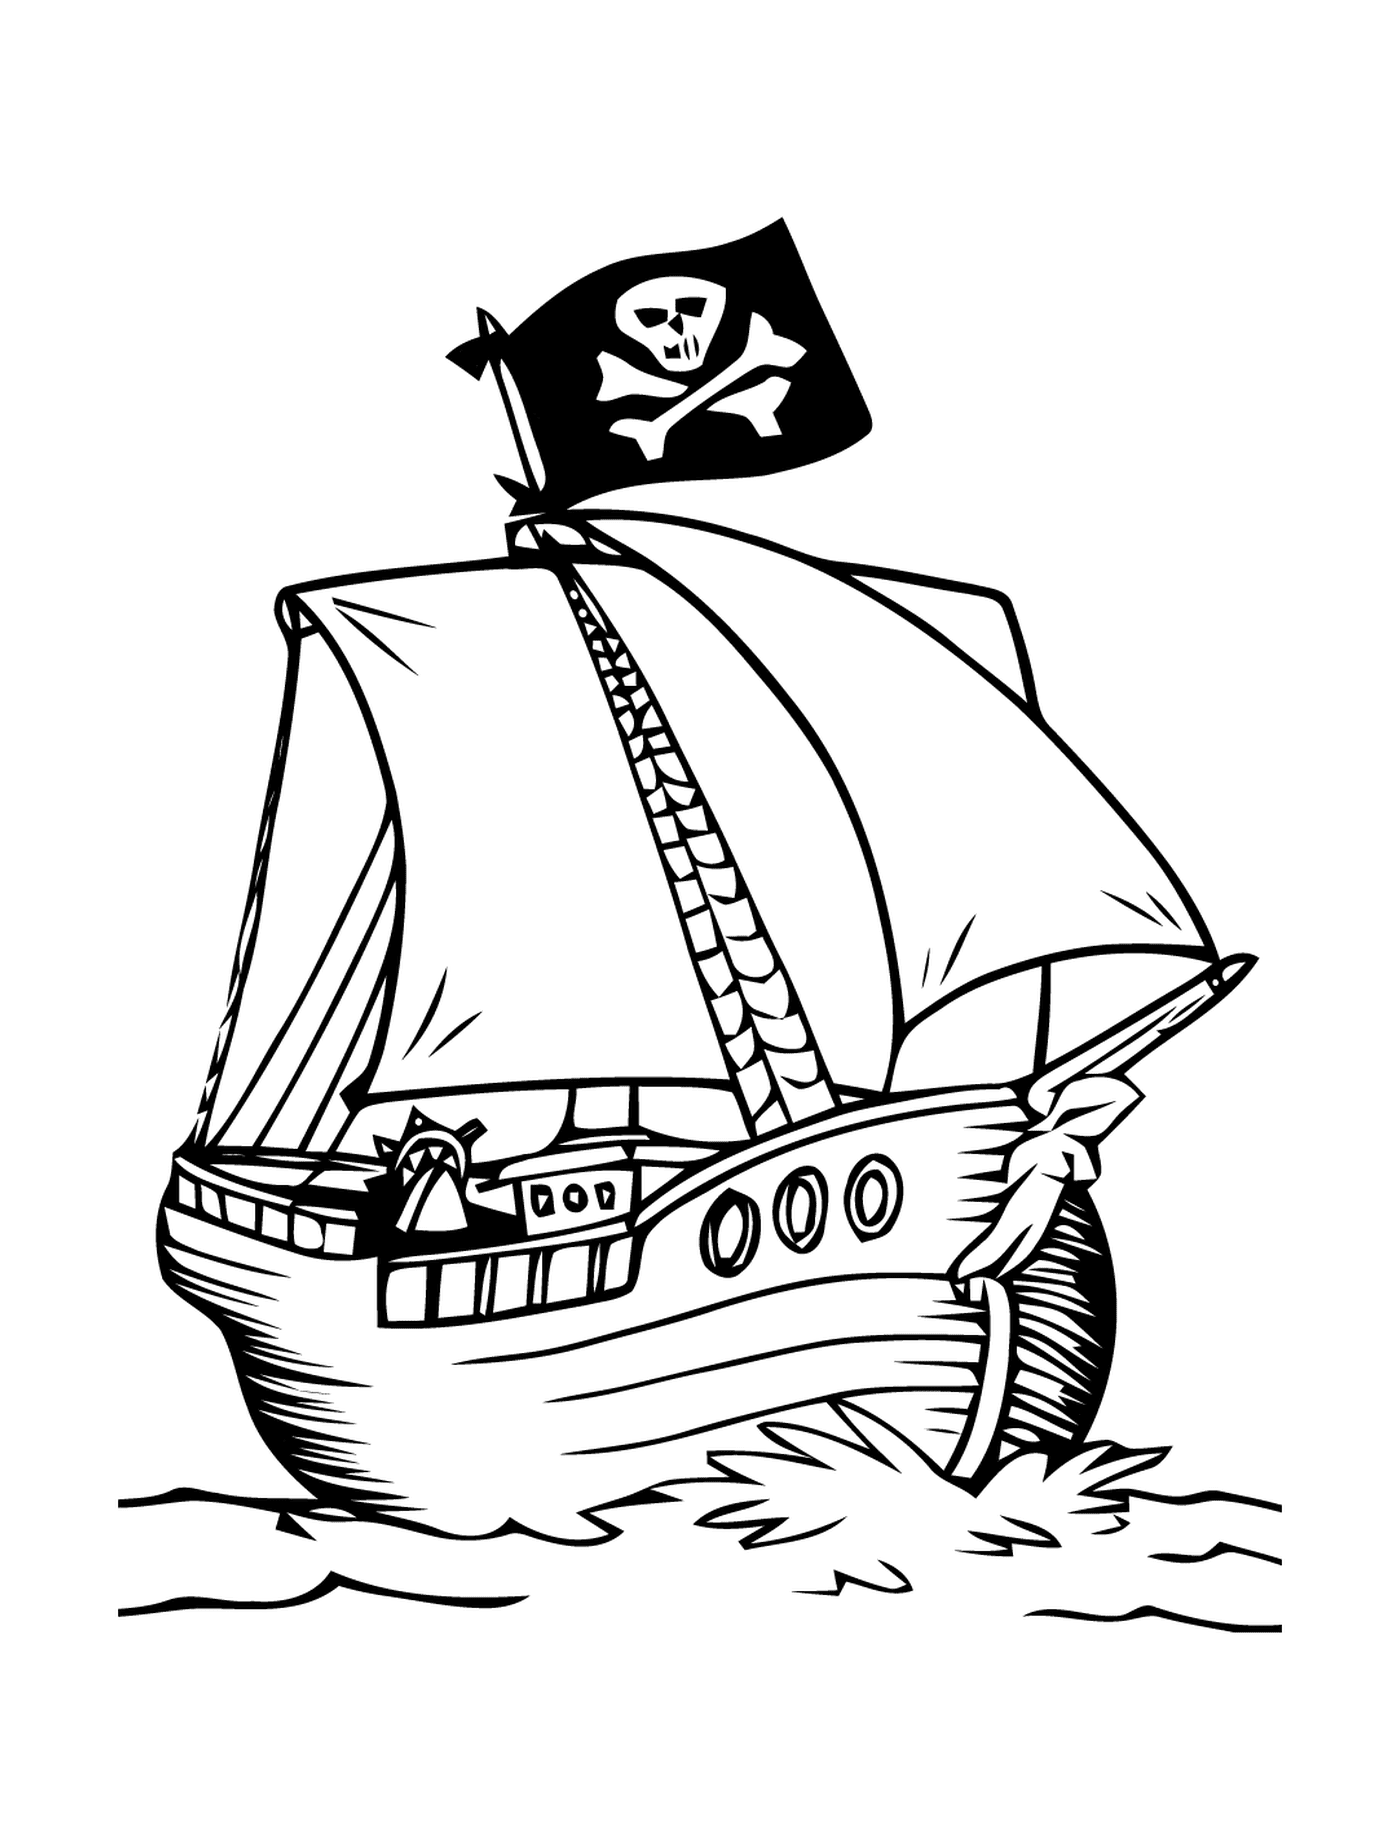  Barco pirata con bandera de miedo 